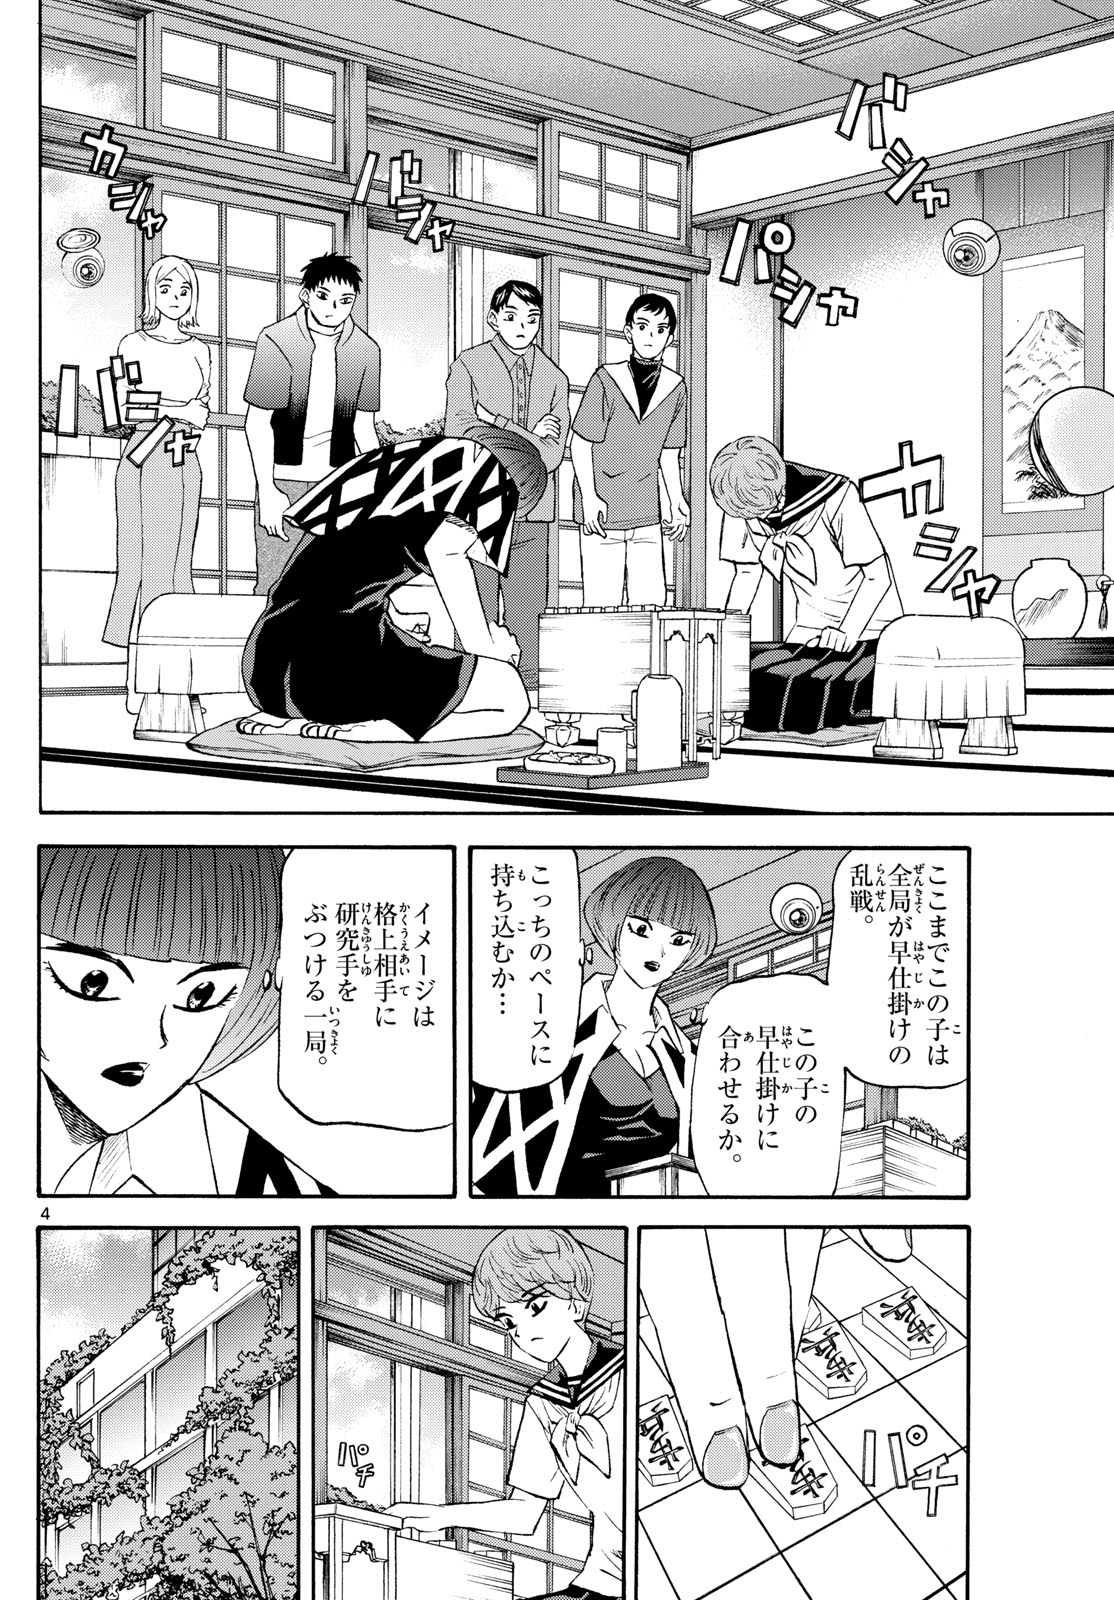 Tatsu to Ichigo - Chapter 200 - Page 4